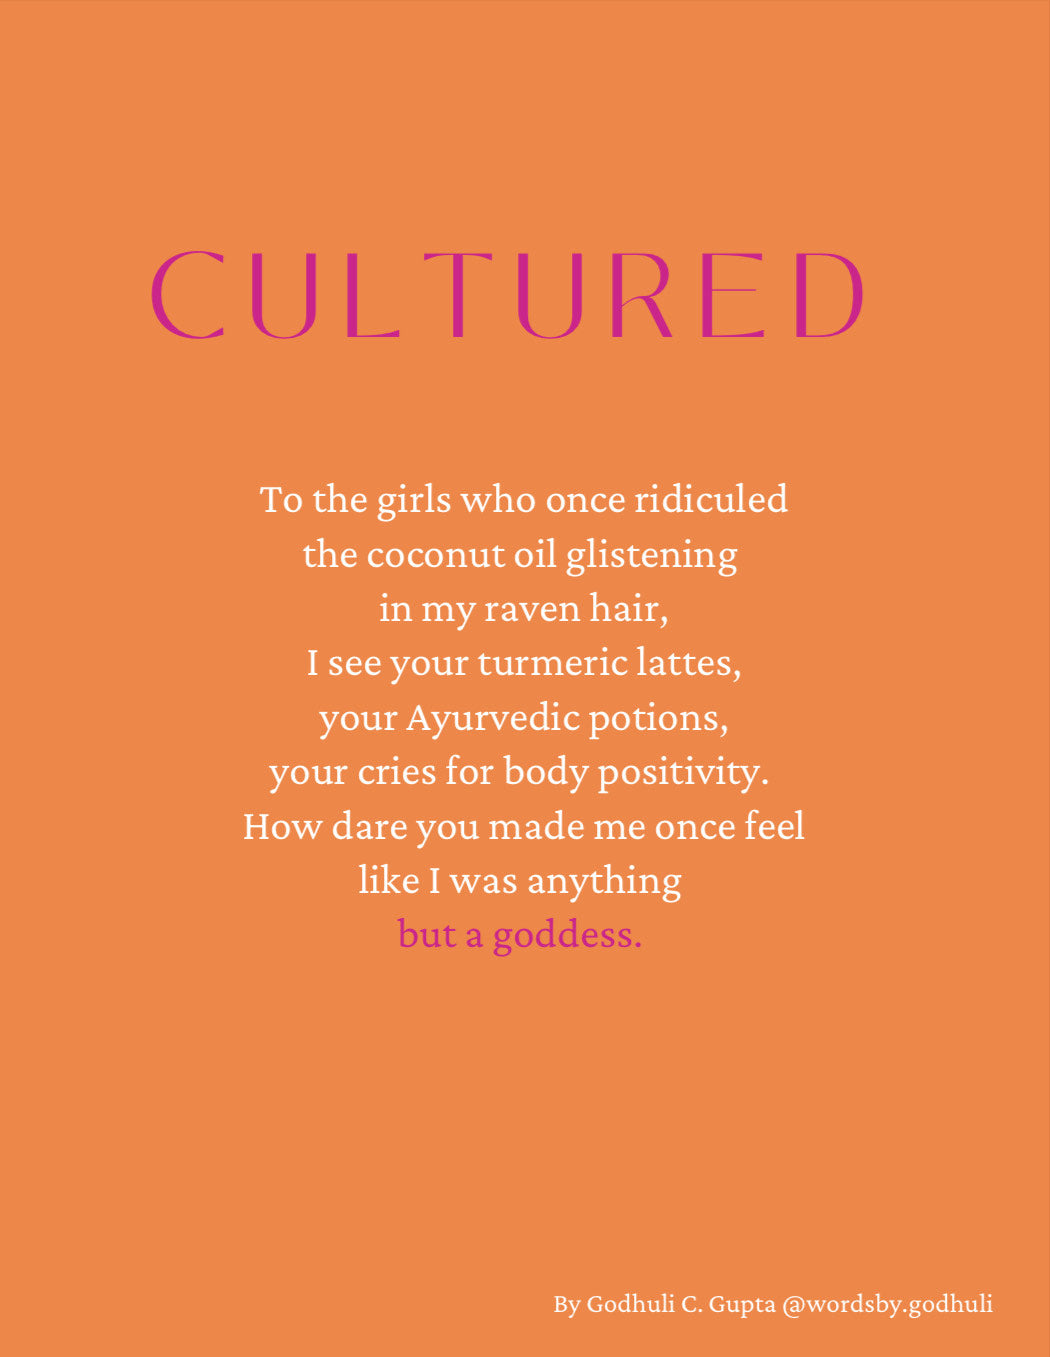 "Cultured" Greeting Card by Godhuli C. Gupta @wordsby.godhuli